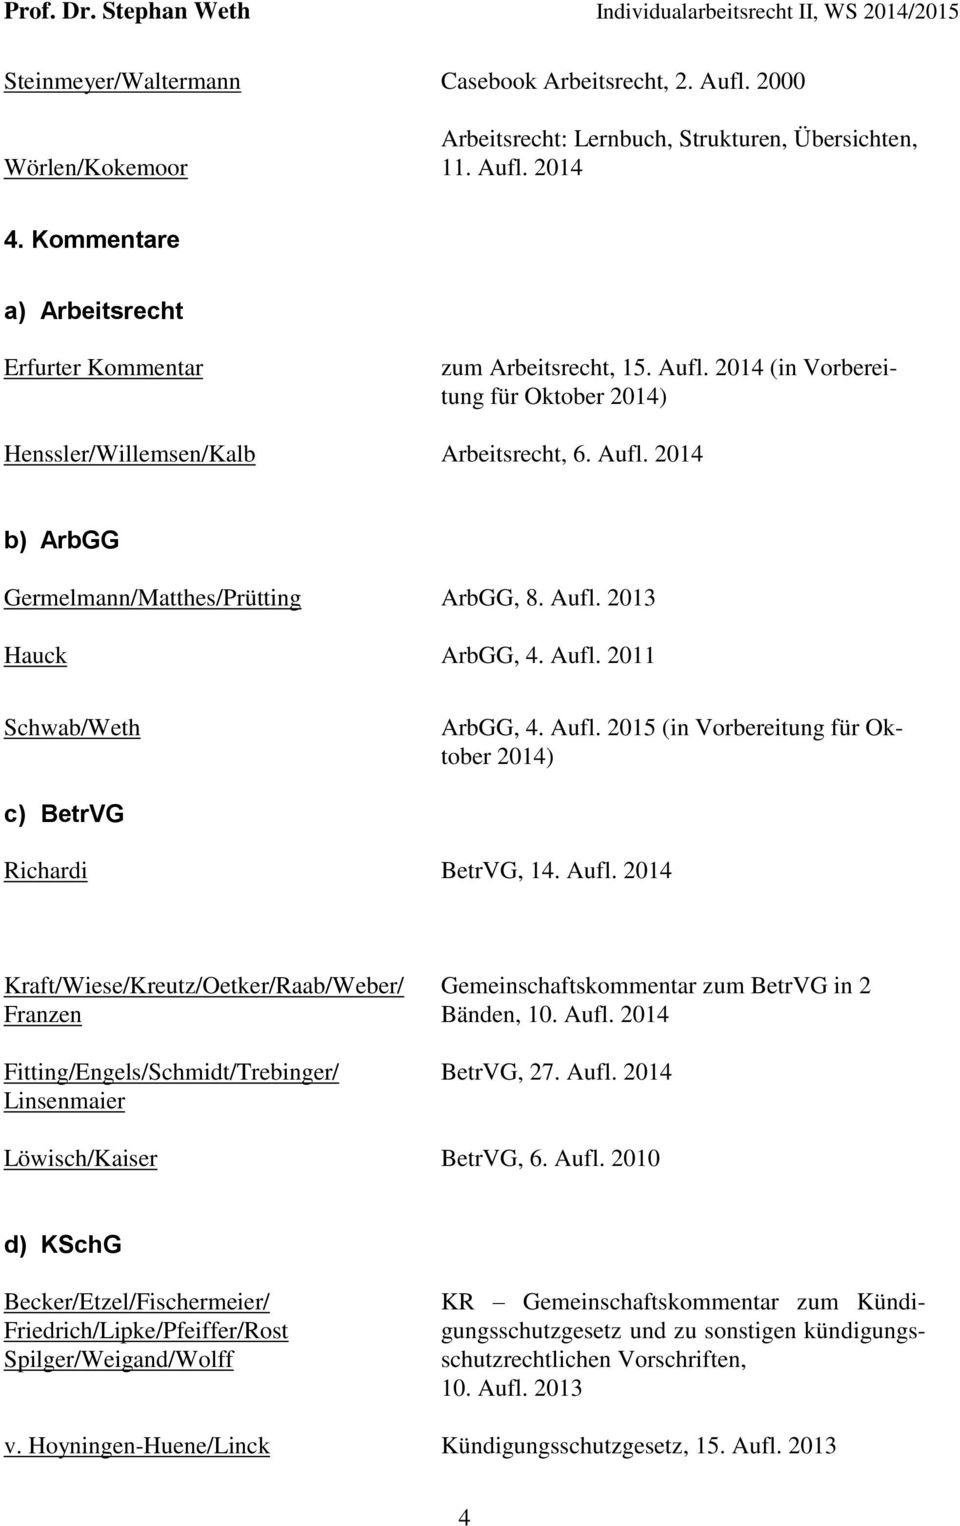 Aufl. 2013 Hauck ArbGG, 4. Aufl. 2011 Schwab/Weth ArbGG, 4. Aufl. 2015 (in Vorbereitung für Oktober 2014) c) BetrVG Richardi BetrVG, 14. Aufl. 2014 Kraft/Wiese/Kreutz/Oetker/Raab/Weber/ Franzen Fitting/Engels/Schmidt/Trebinger/ Linsenmaier Gemeinschaftskommentar zum BetrVG in 2 Bänden, 10.